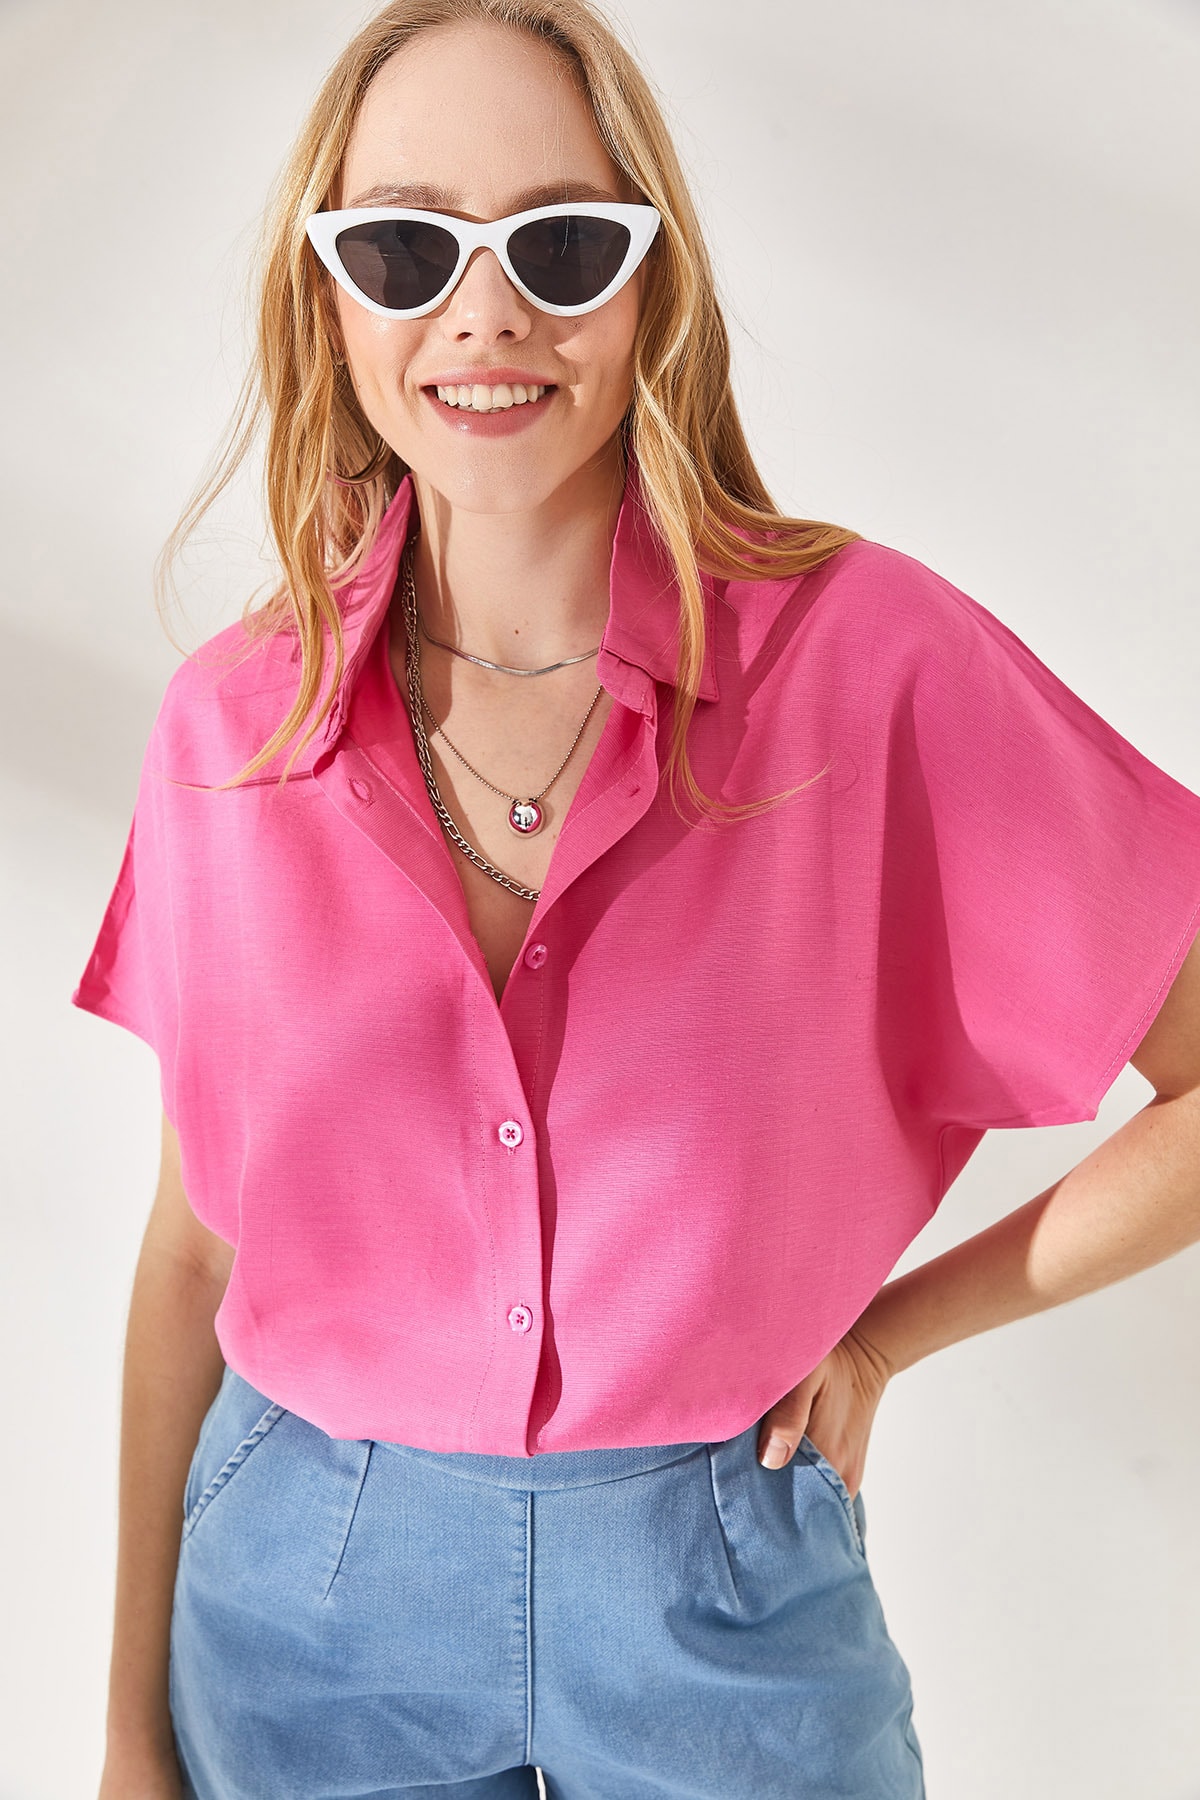 Olalook Women's Pink Bat Oversized Linen Shirt